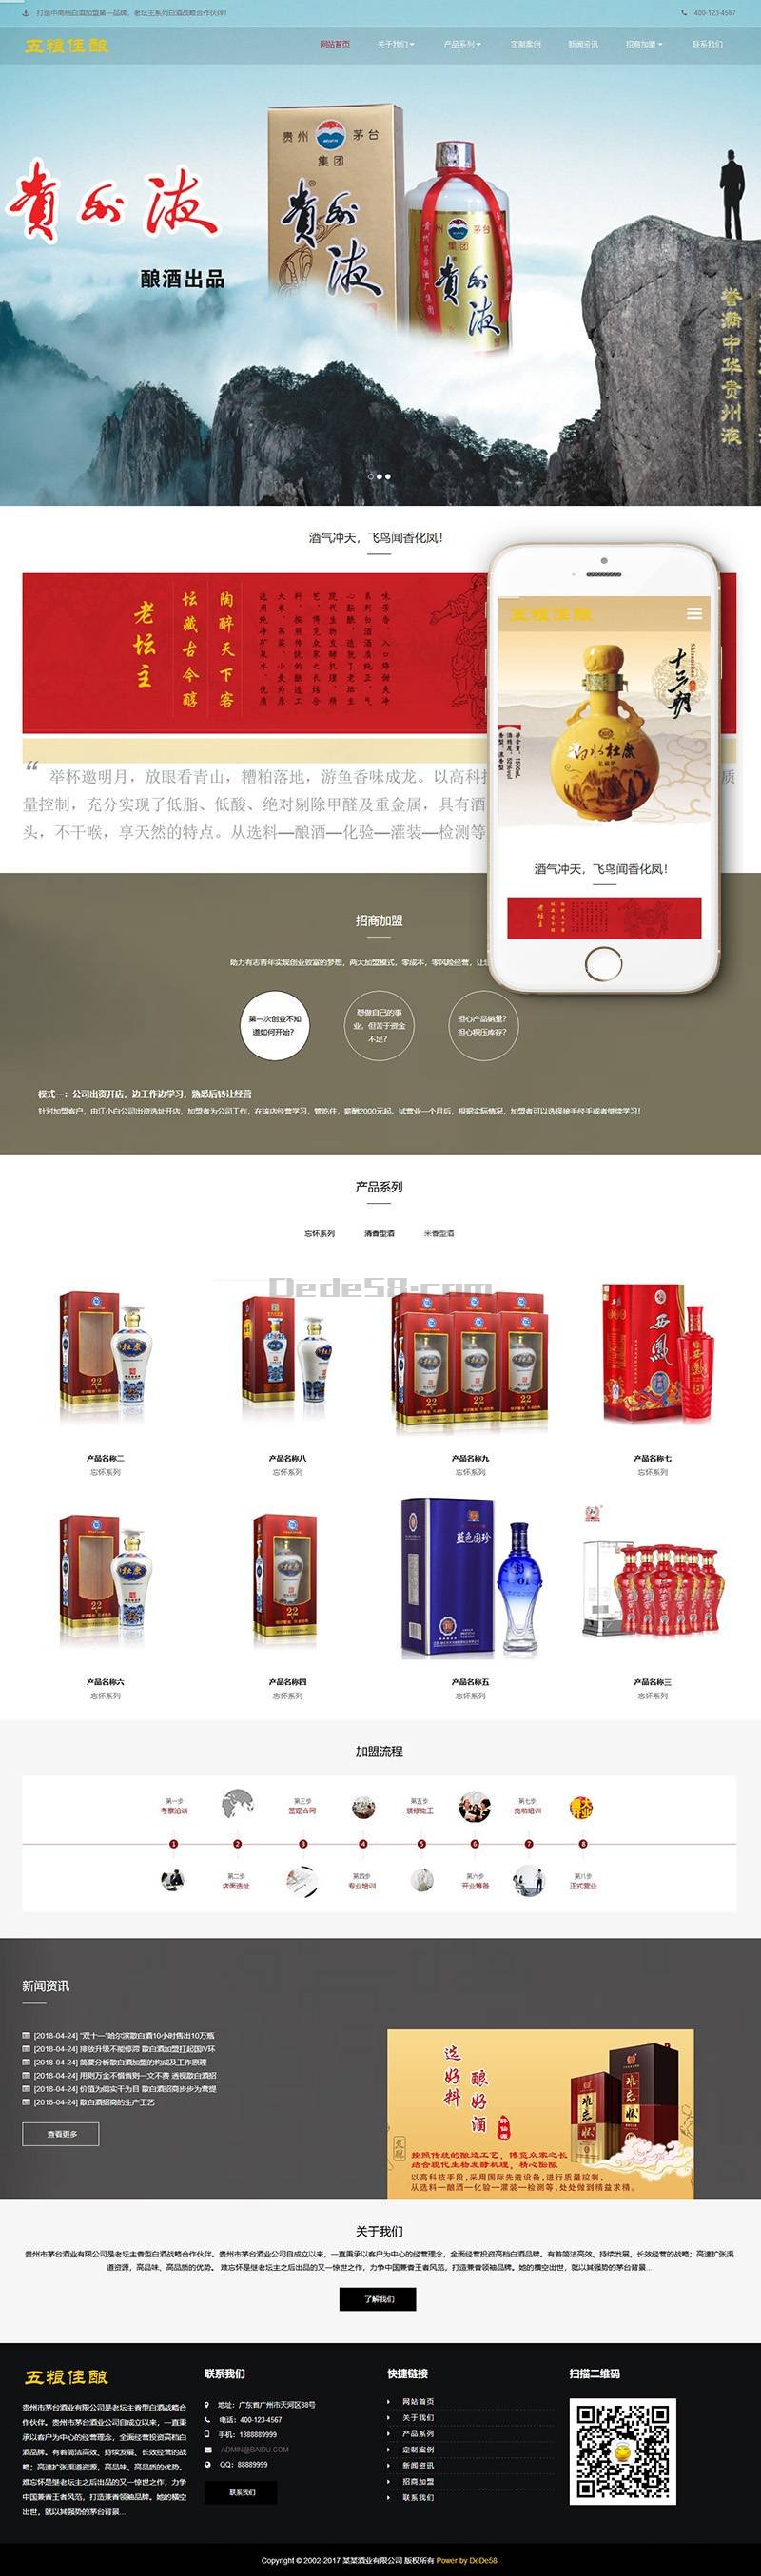 响应式高端酒业包装设计类网站织梦模板(自适应手机端) 第2张